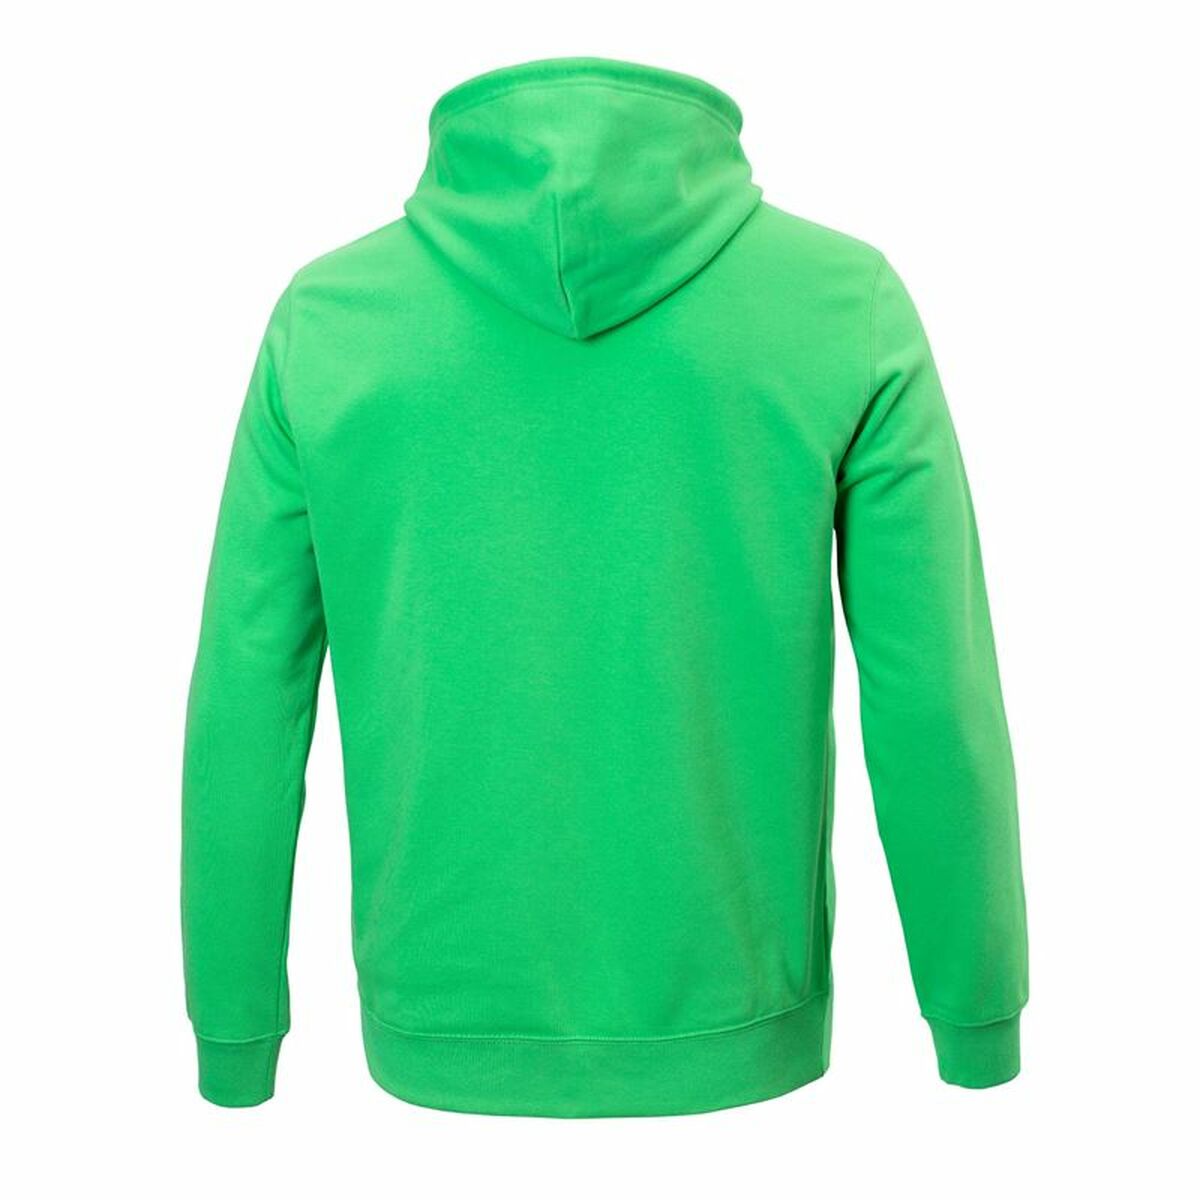 Kaufe Herren Sweater mit Kapuze Champion grün bei AWK Flagship um € 61.00